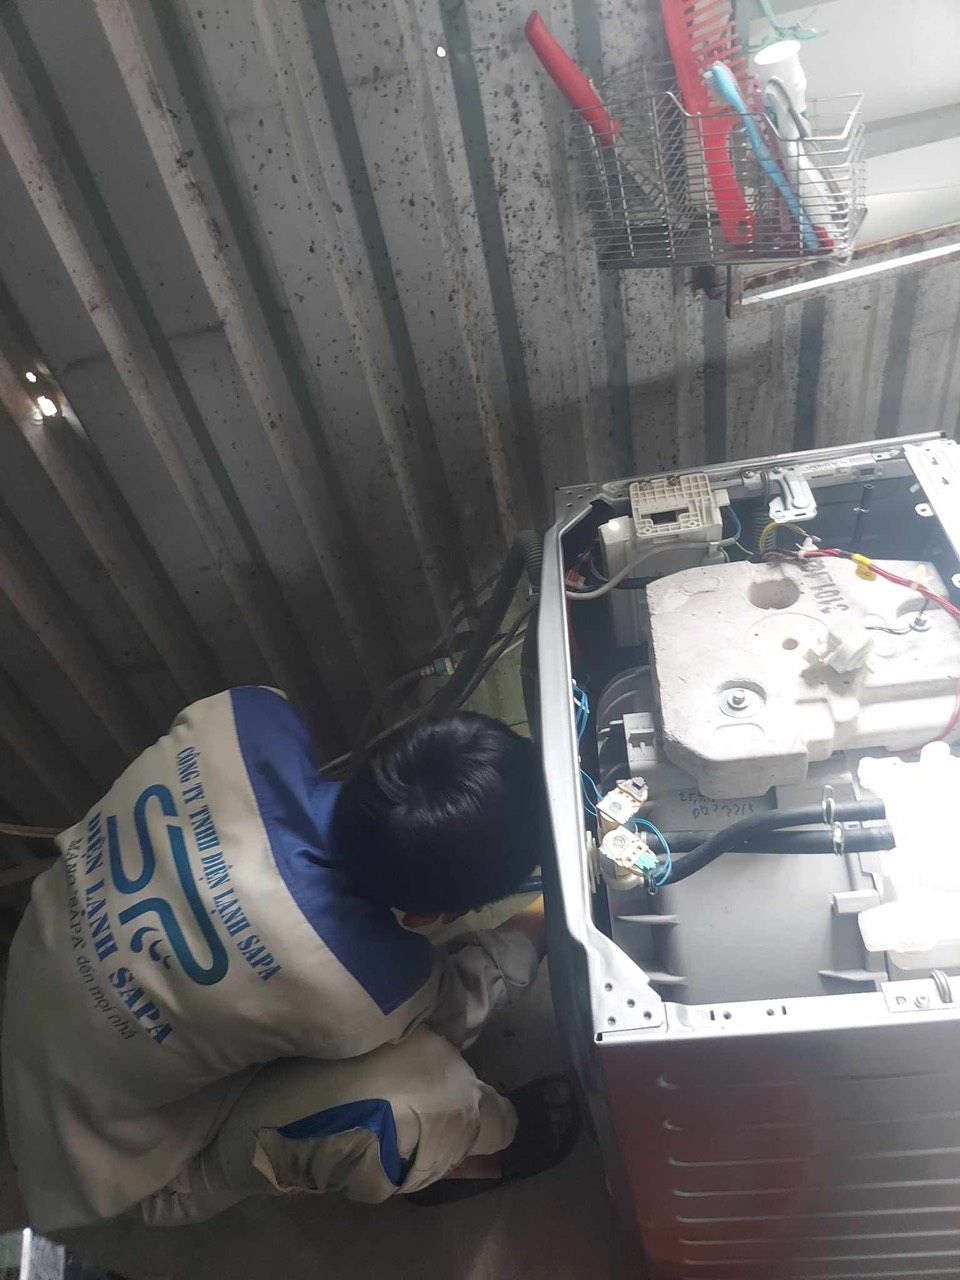 Đội ngũ kỹ thuật viên chuyên nghiệp của Điện lạnh Sapa sẽ sửa máy giặt tại nhà quận Bình Thạnh cho bạn nhanh chóng và đảm bảo tính chính xác nhất